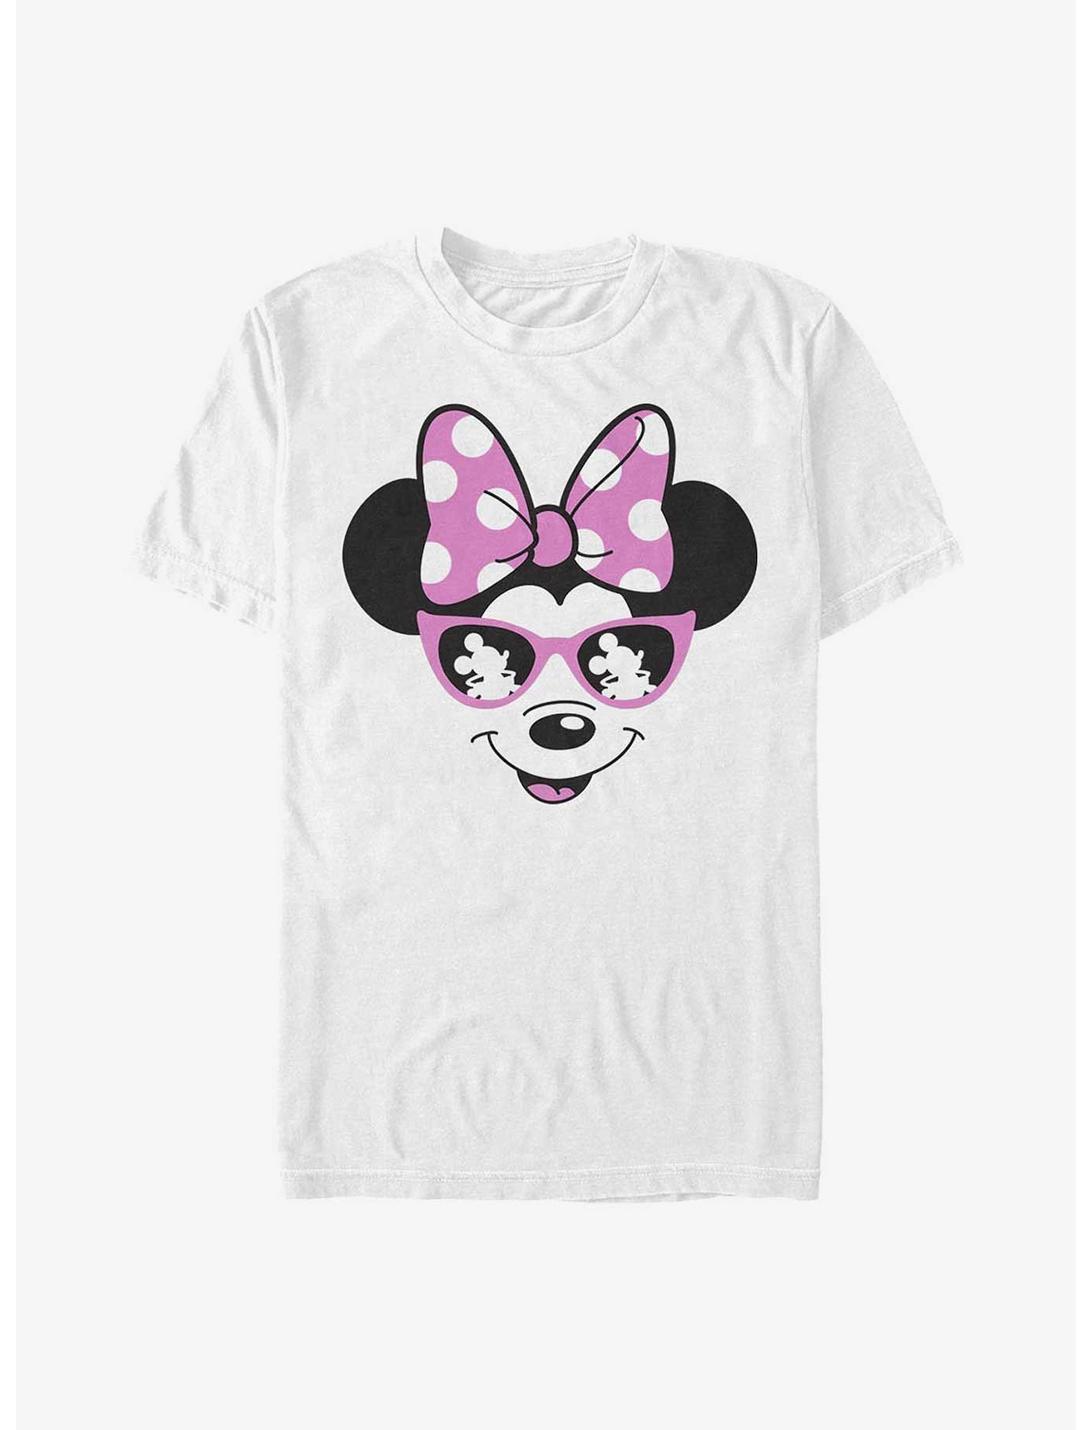 Disney Minnie Mouse Minnie Shades T-Shirt, WHITE, hi-res